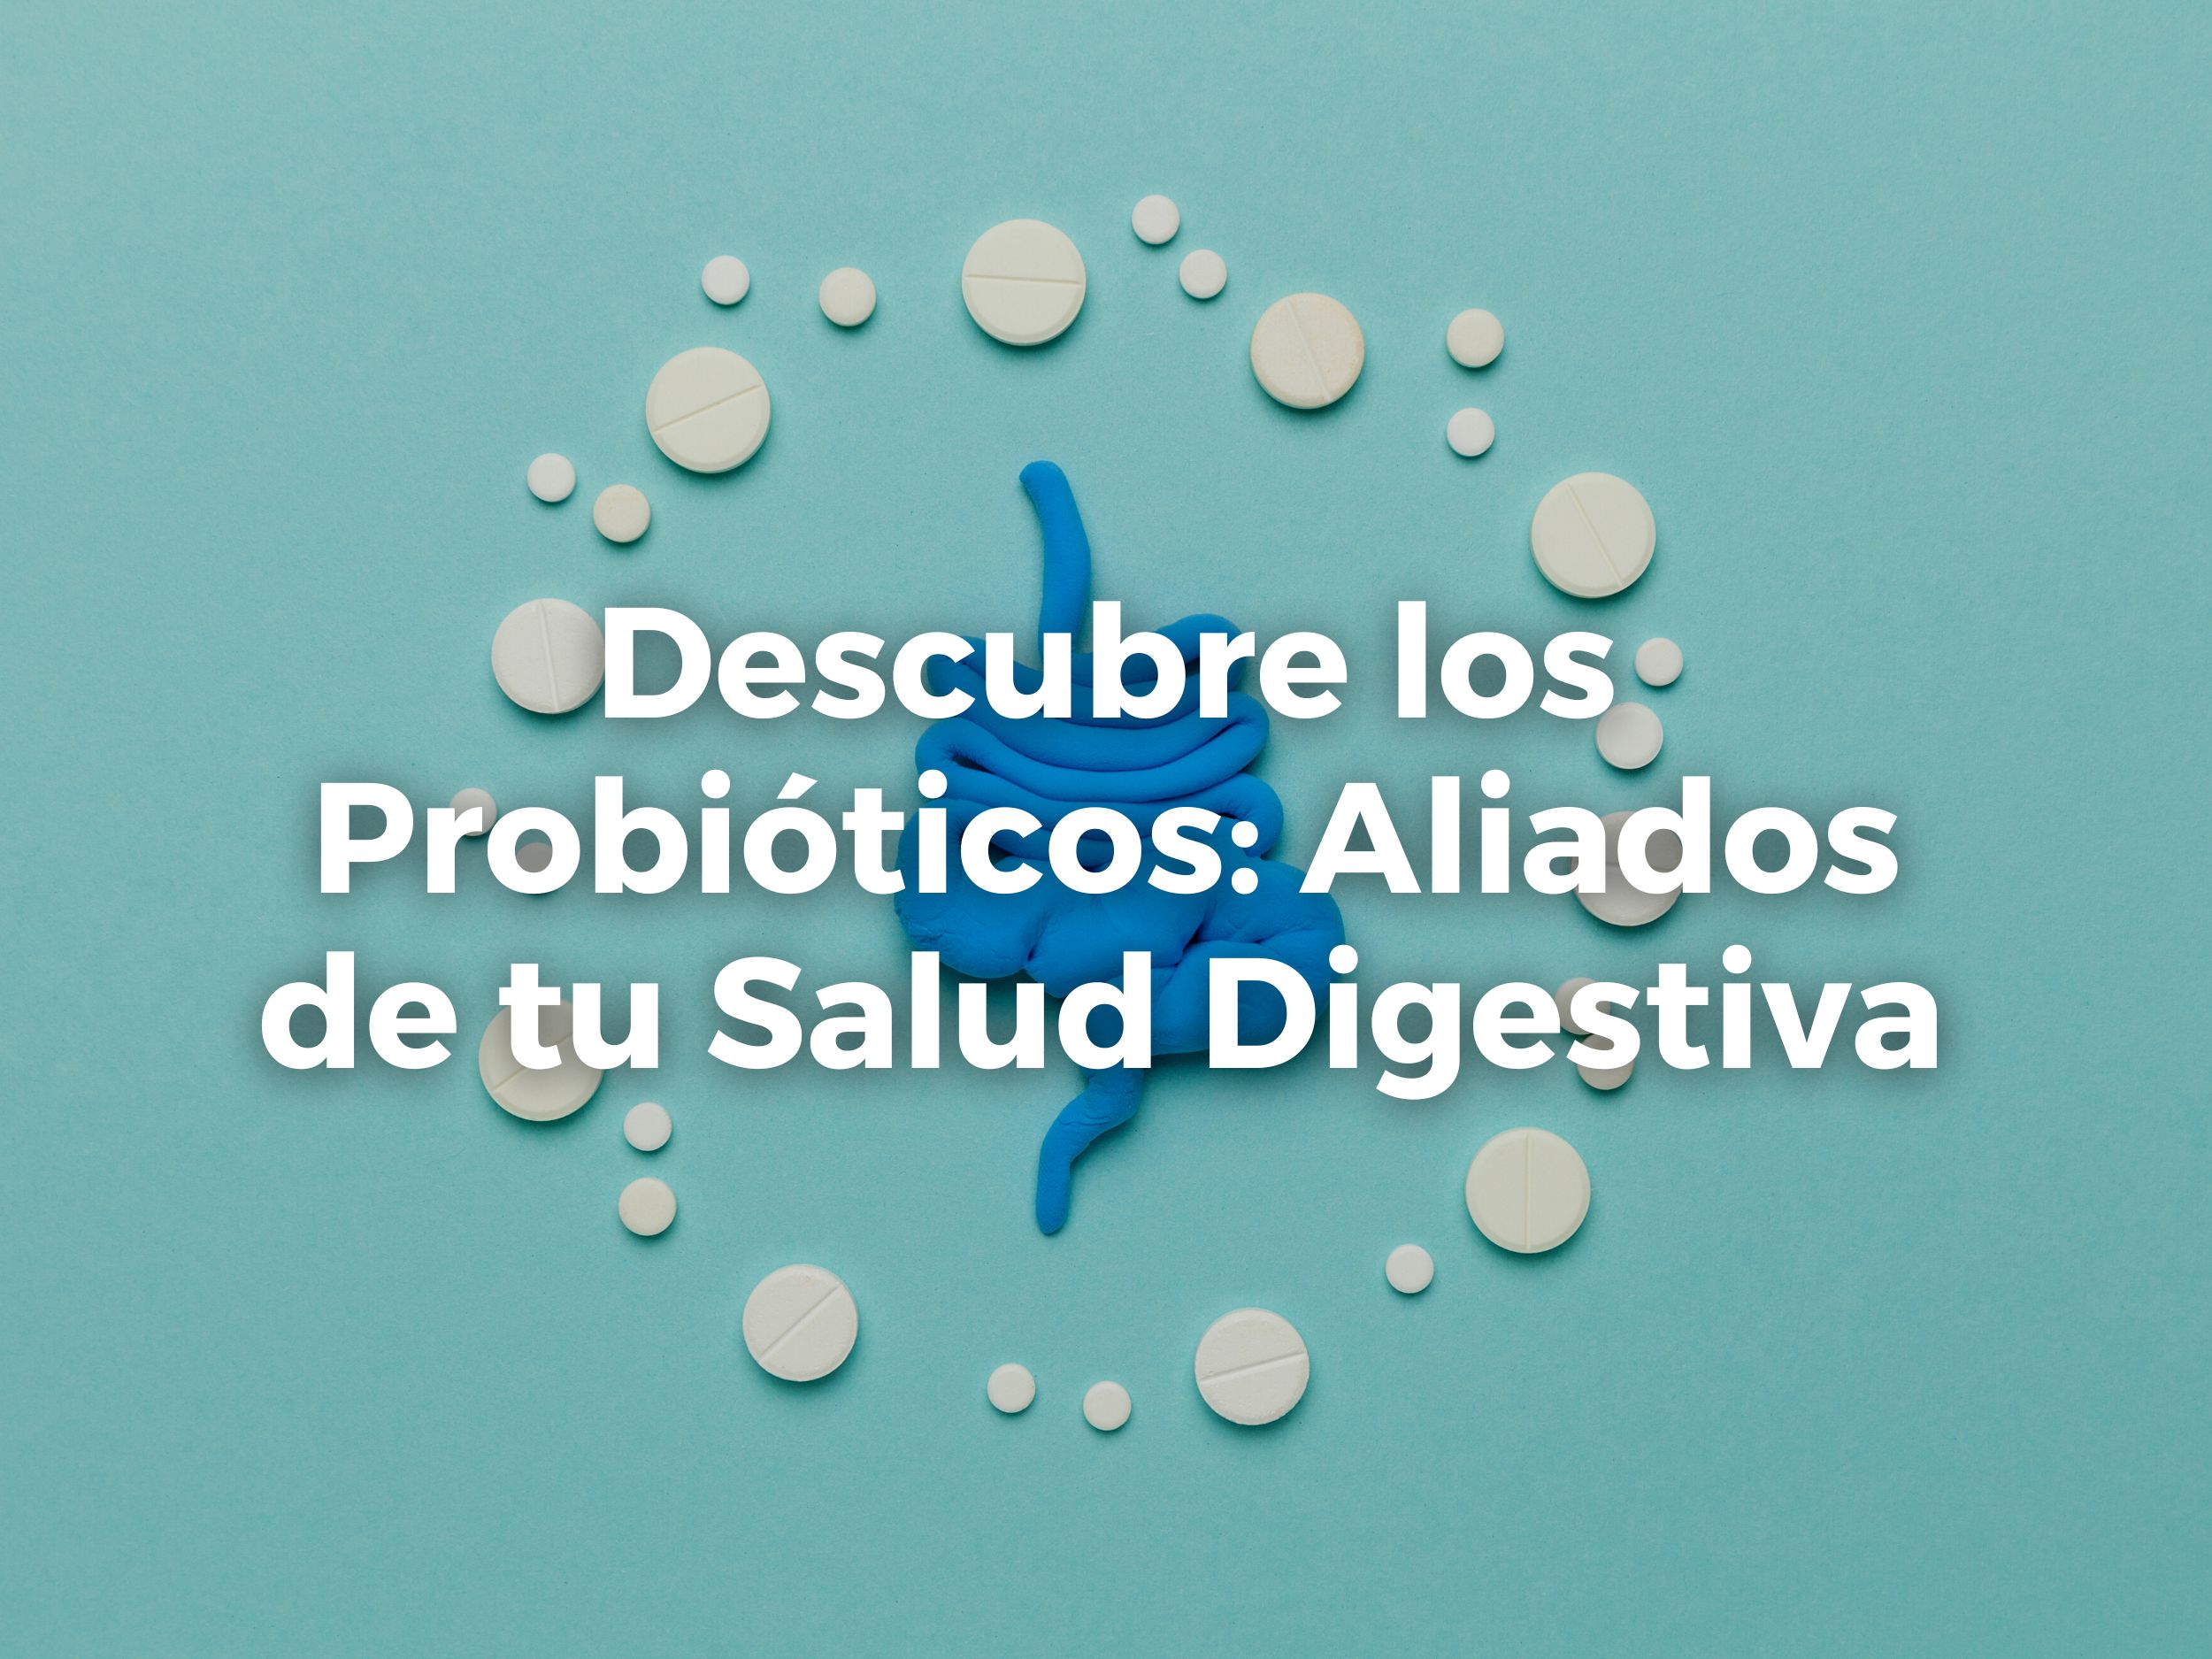 Descubre los Probióticos: Aliados de tu Salud Digestiva